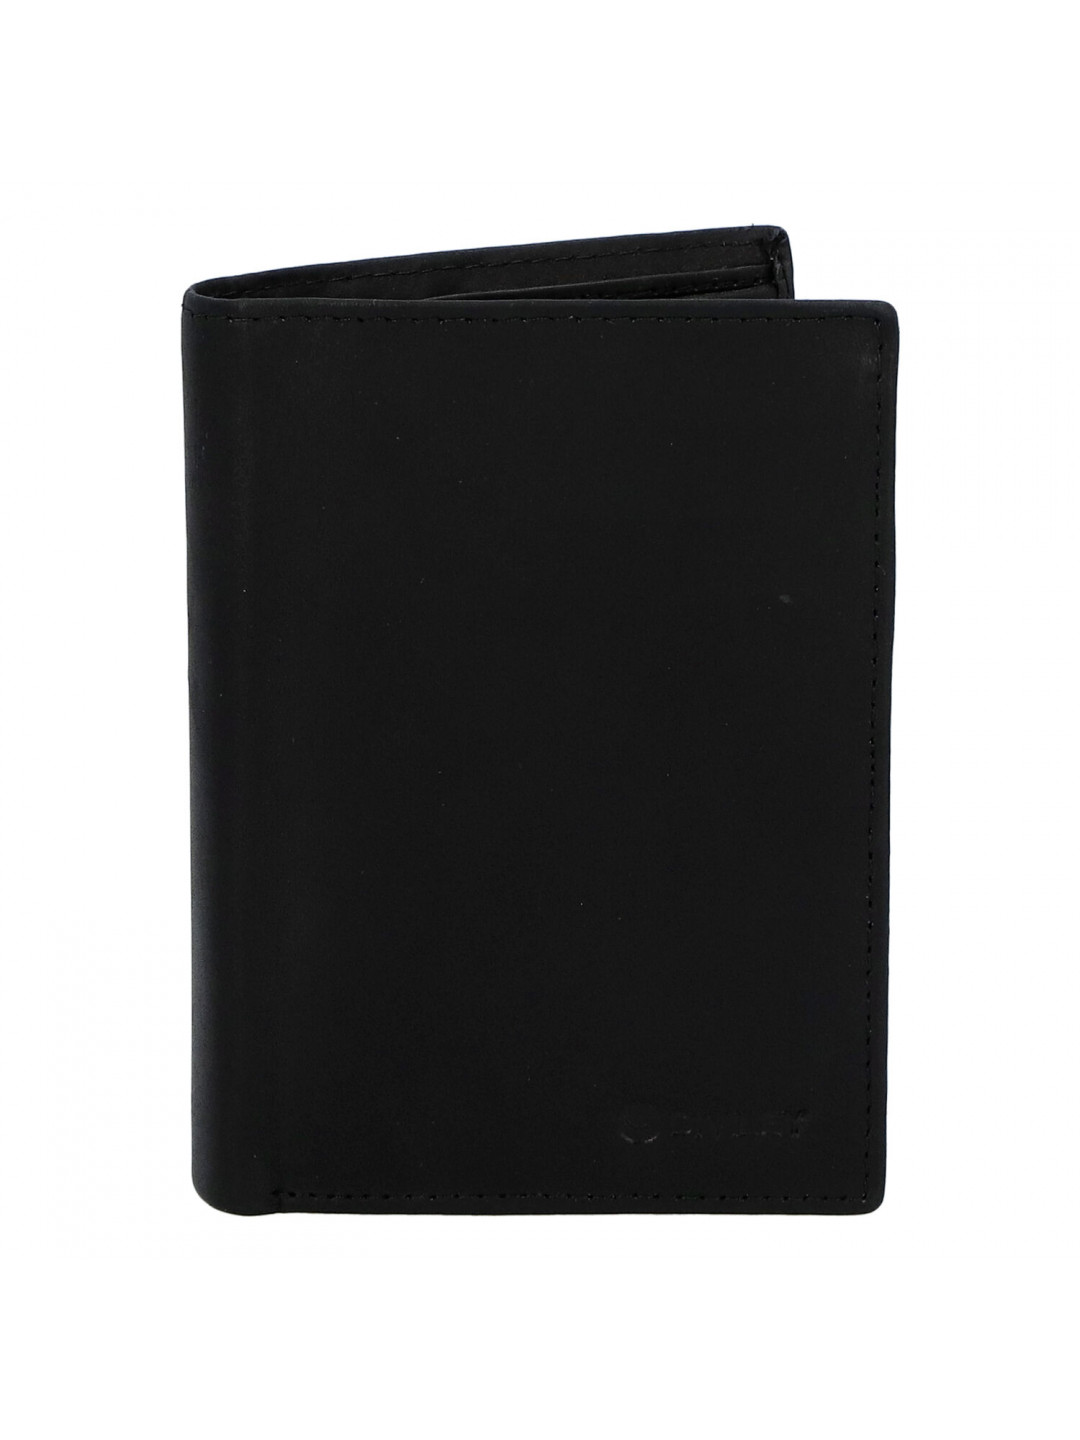 Pánská kožená peněženka černá – Diviley Mark